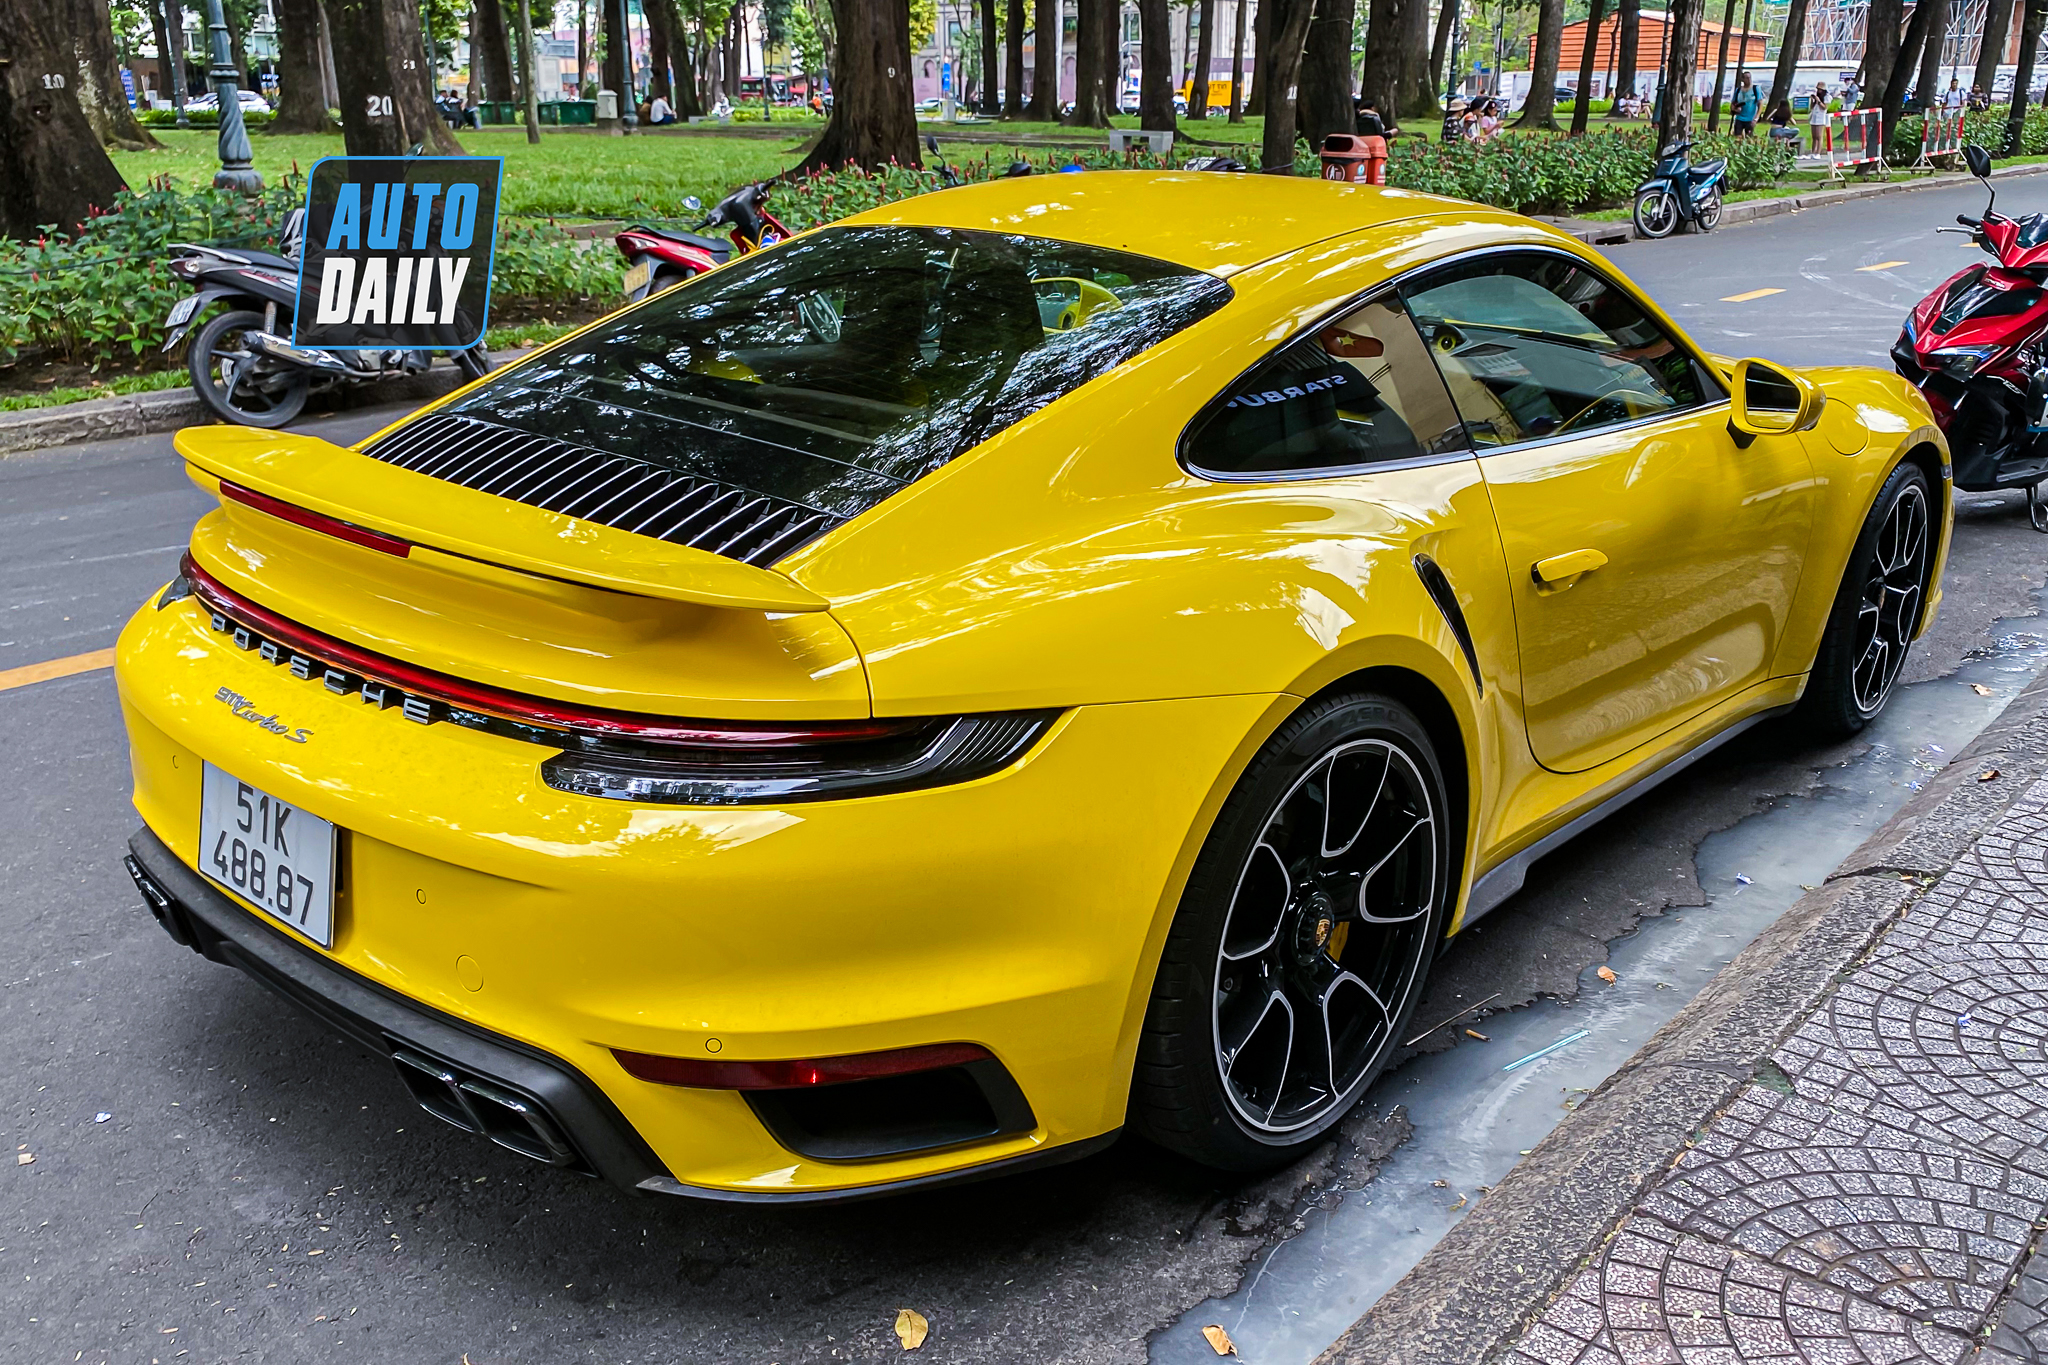 Bắt gặp Porsche 911 Turbo S hơn 17 tỷ màu vàng độc nhất Việt Nam của đại gia Sài Gòn porsche-911-turbo-s-mau-vang-autodaily-2.JPG